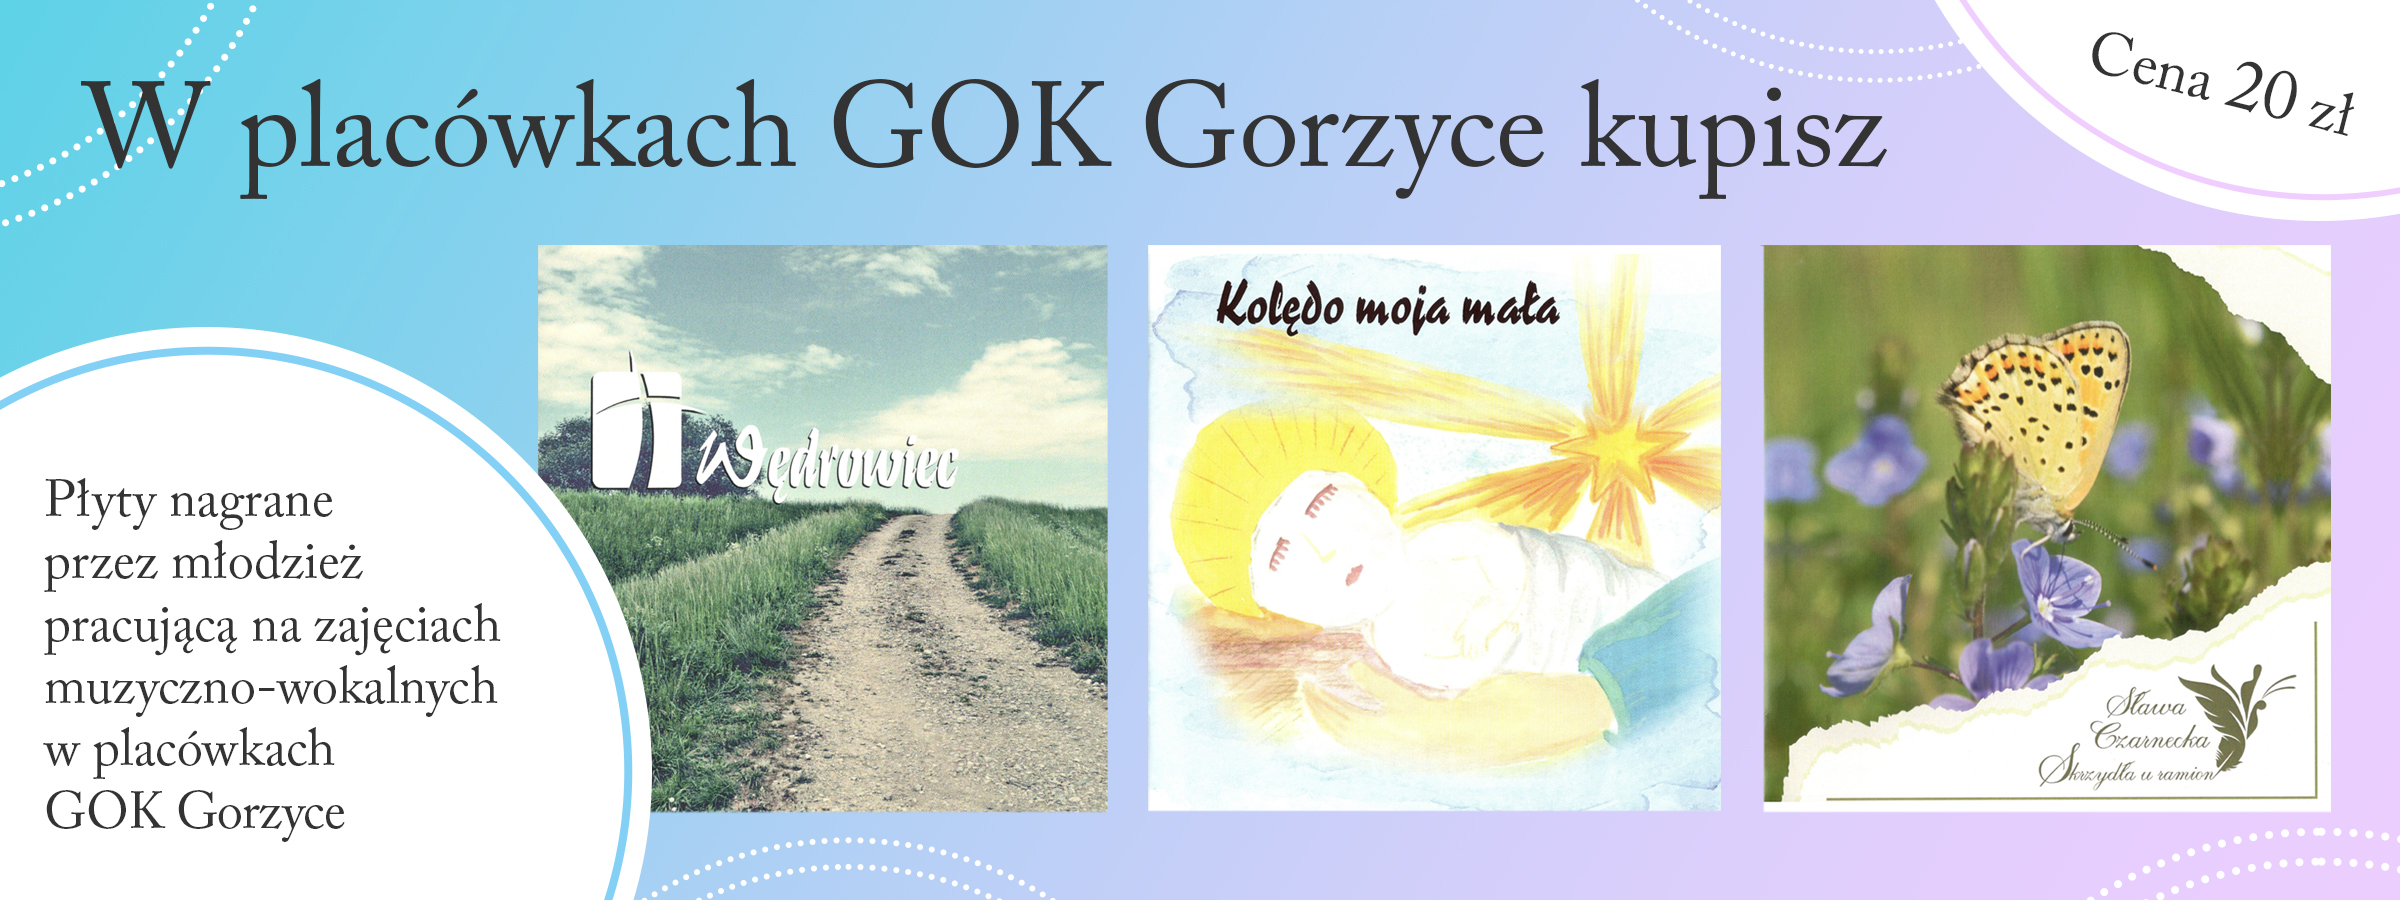 w placówkach GOK Gorzyce kupisz płyty nagrane przez młodzież pracującą na zajęciach muzyczno-wokalnych w placówkach GOK Gorzyce